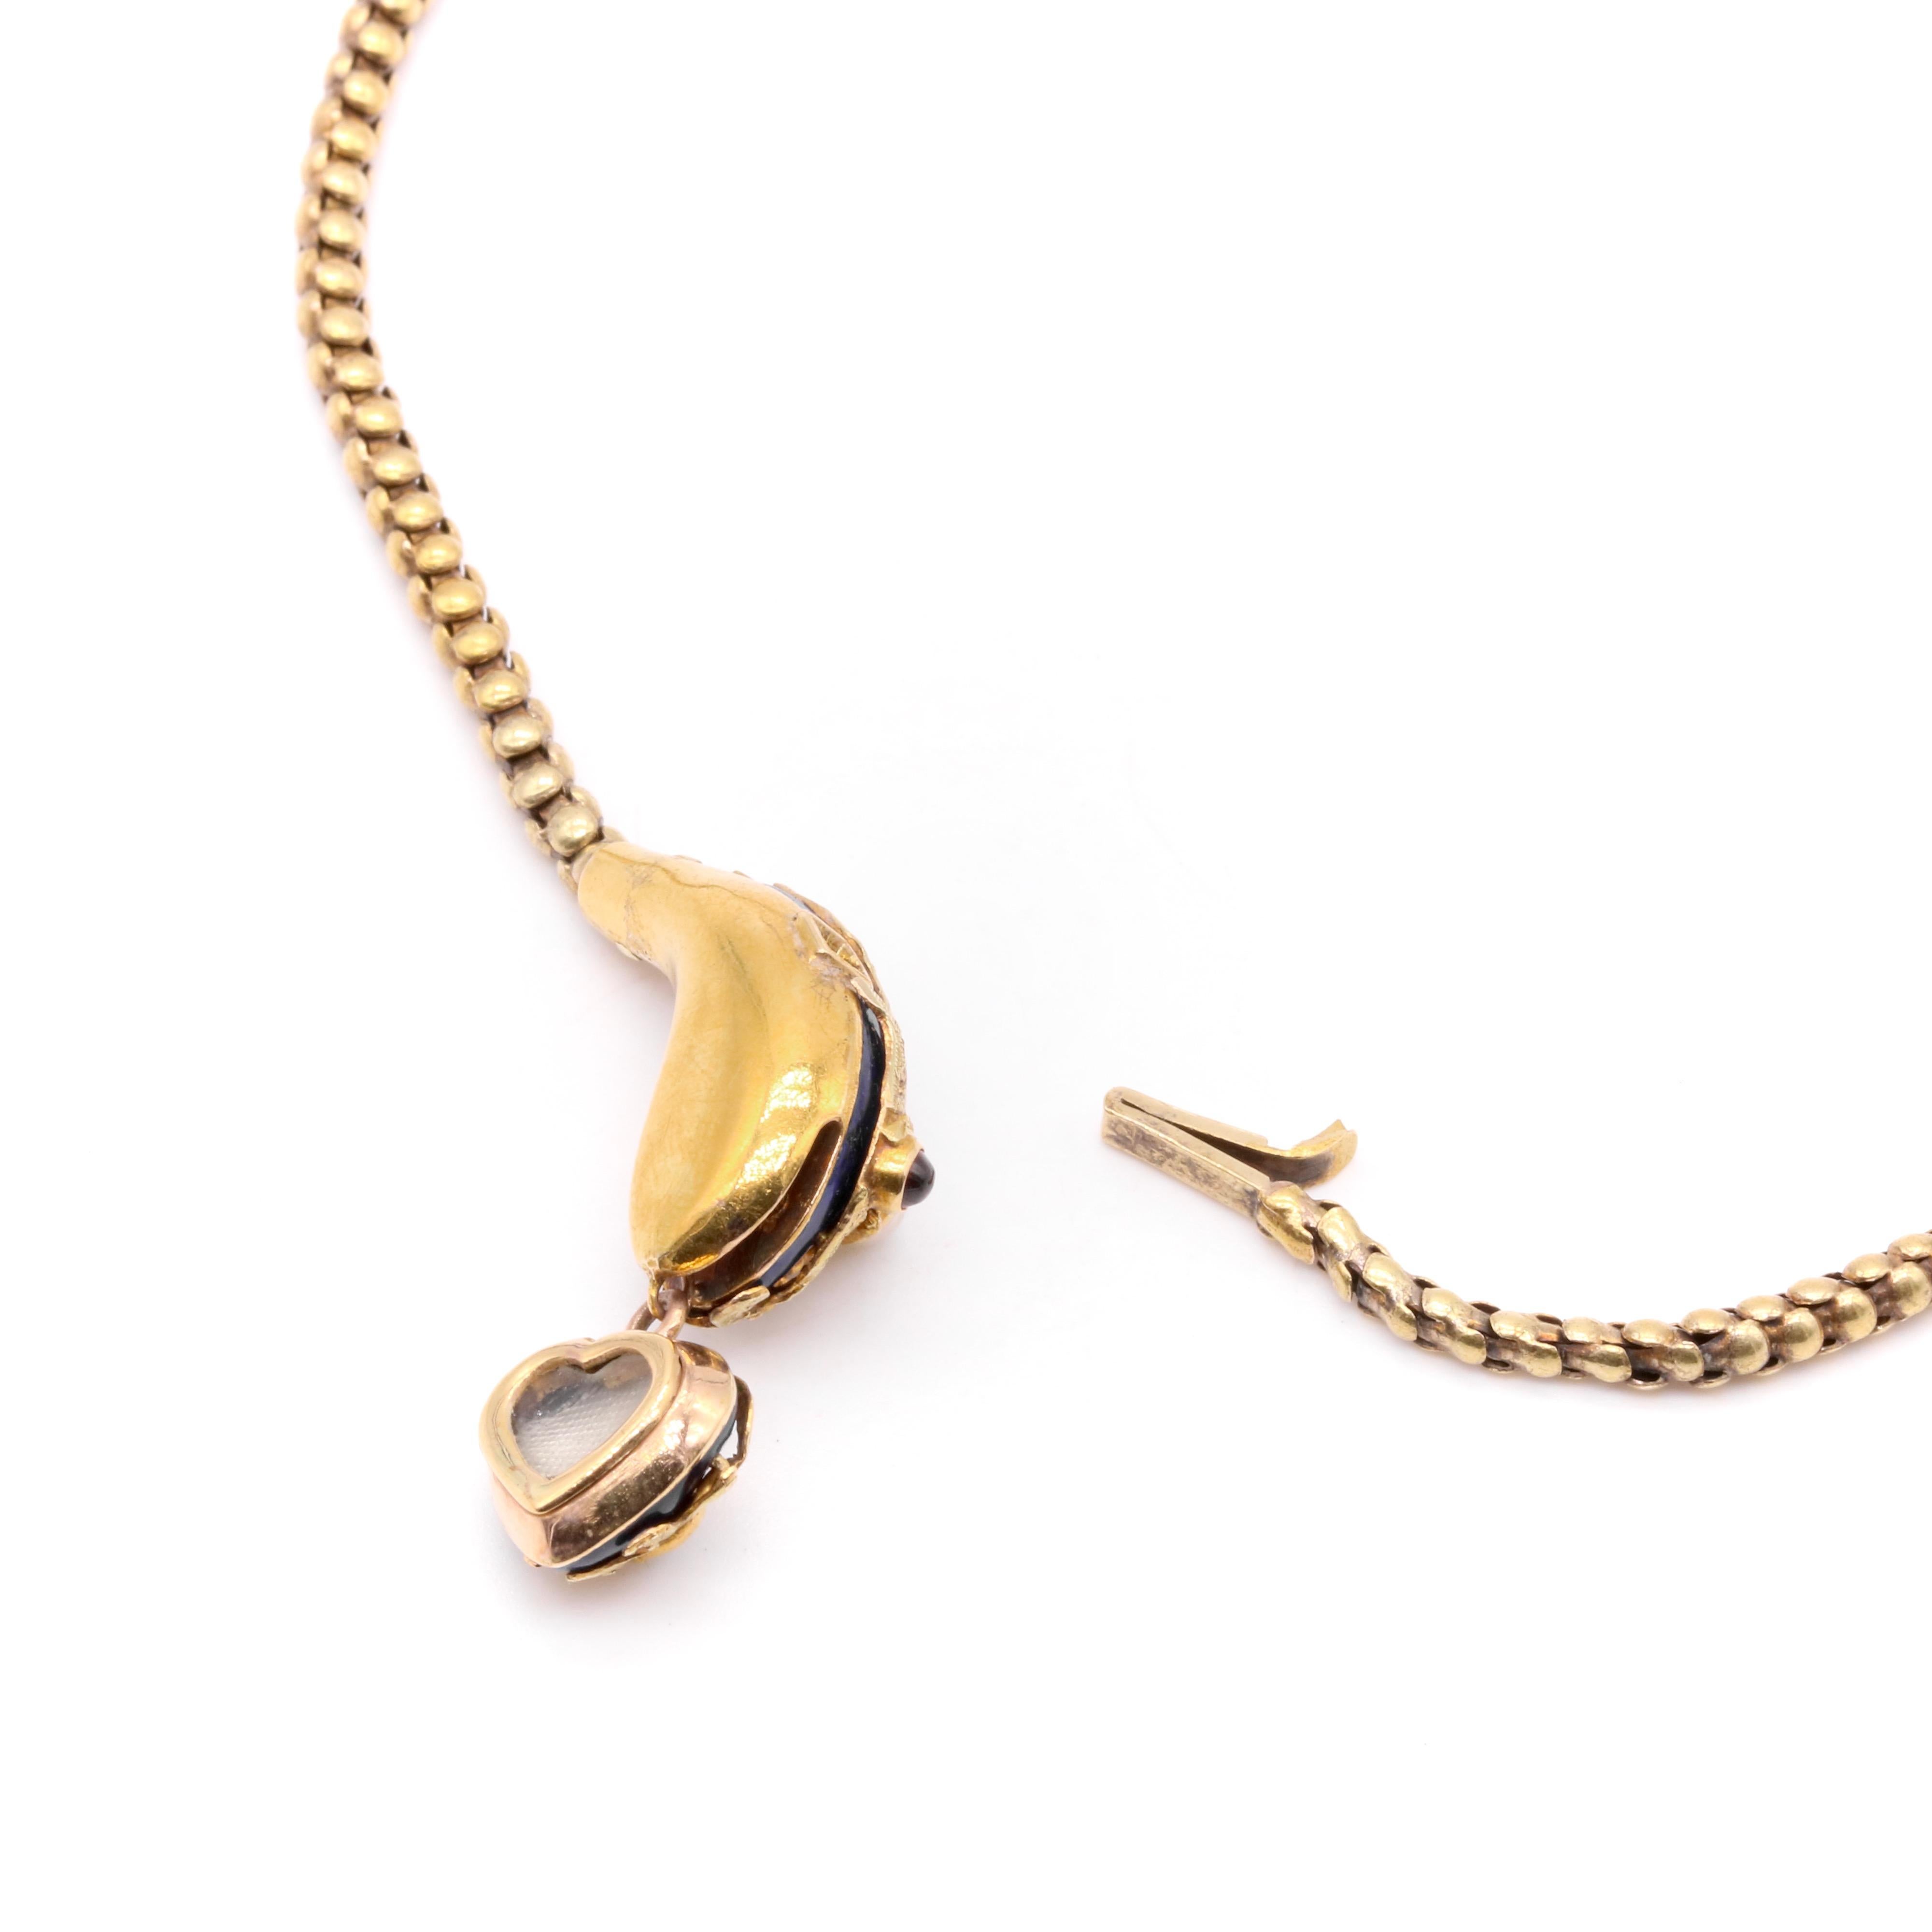 Antique Victorian 1850s 18K Gold Blue Enamel Pearl & Garnet Snake Necklace For Sale 5